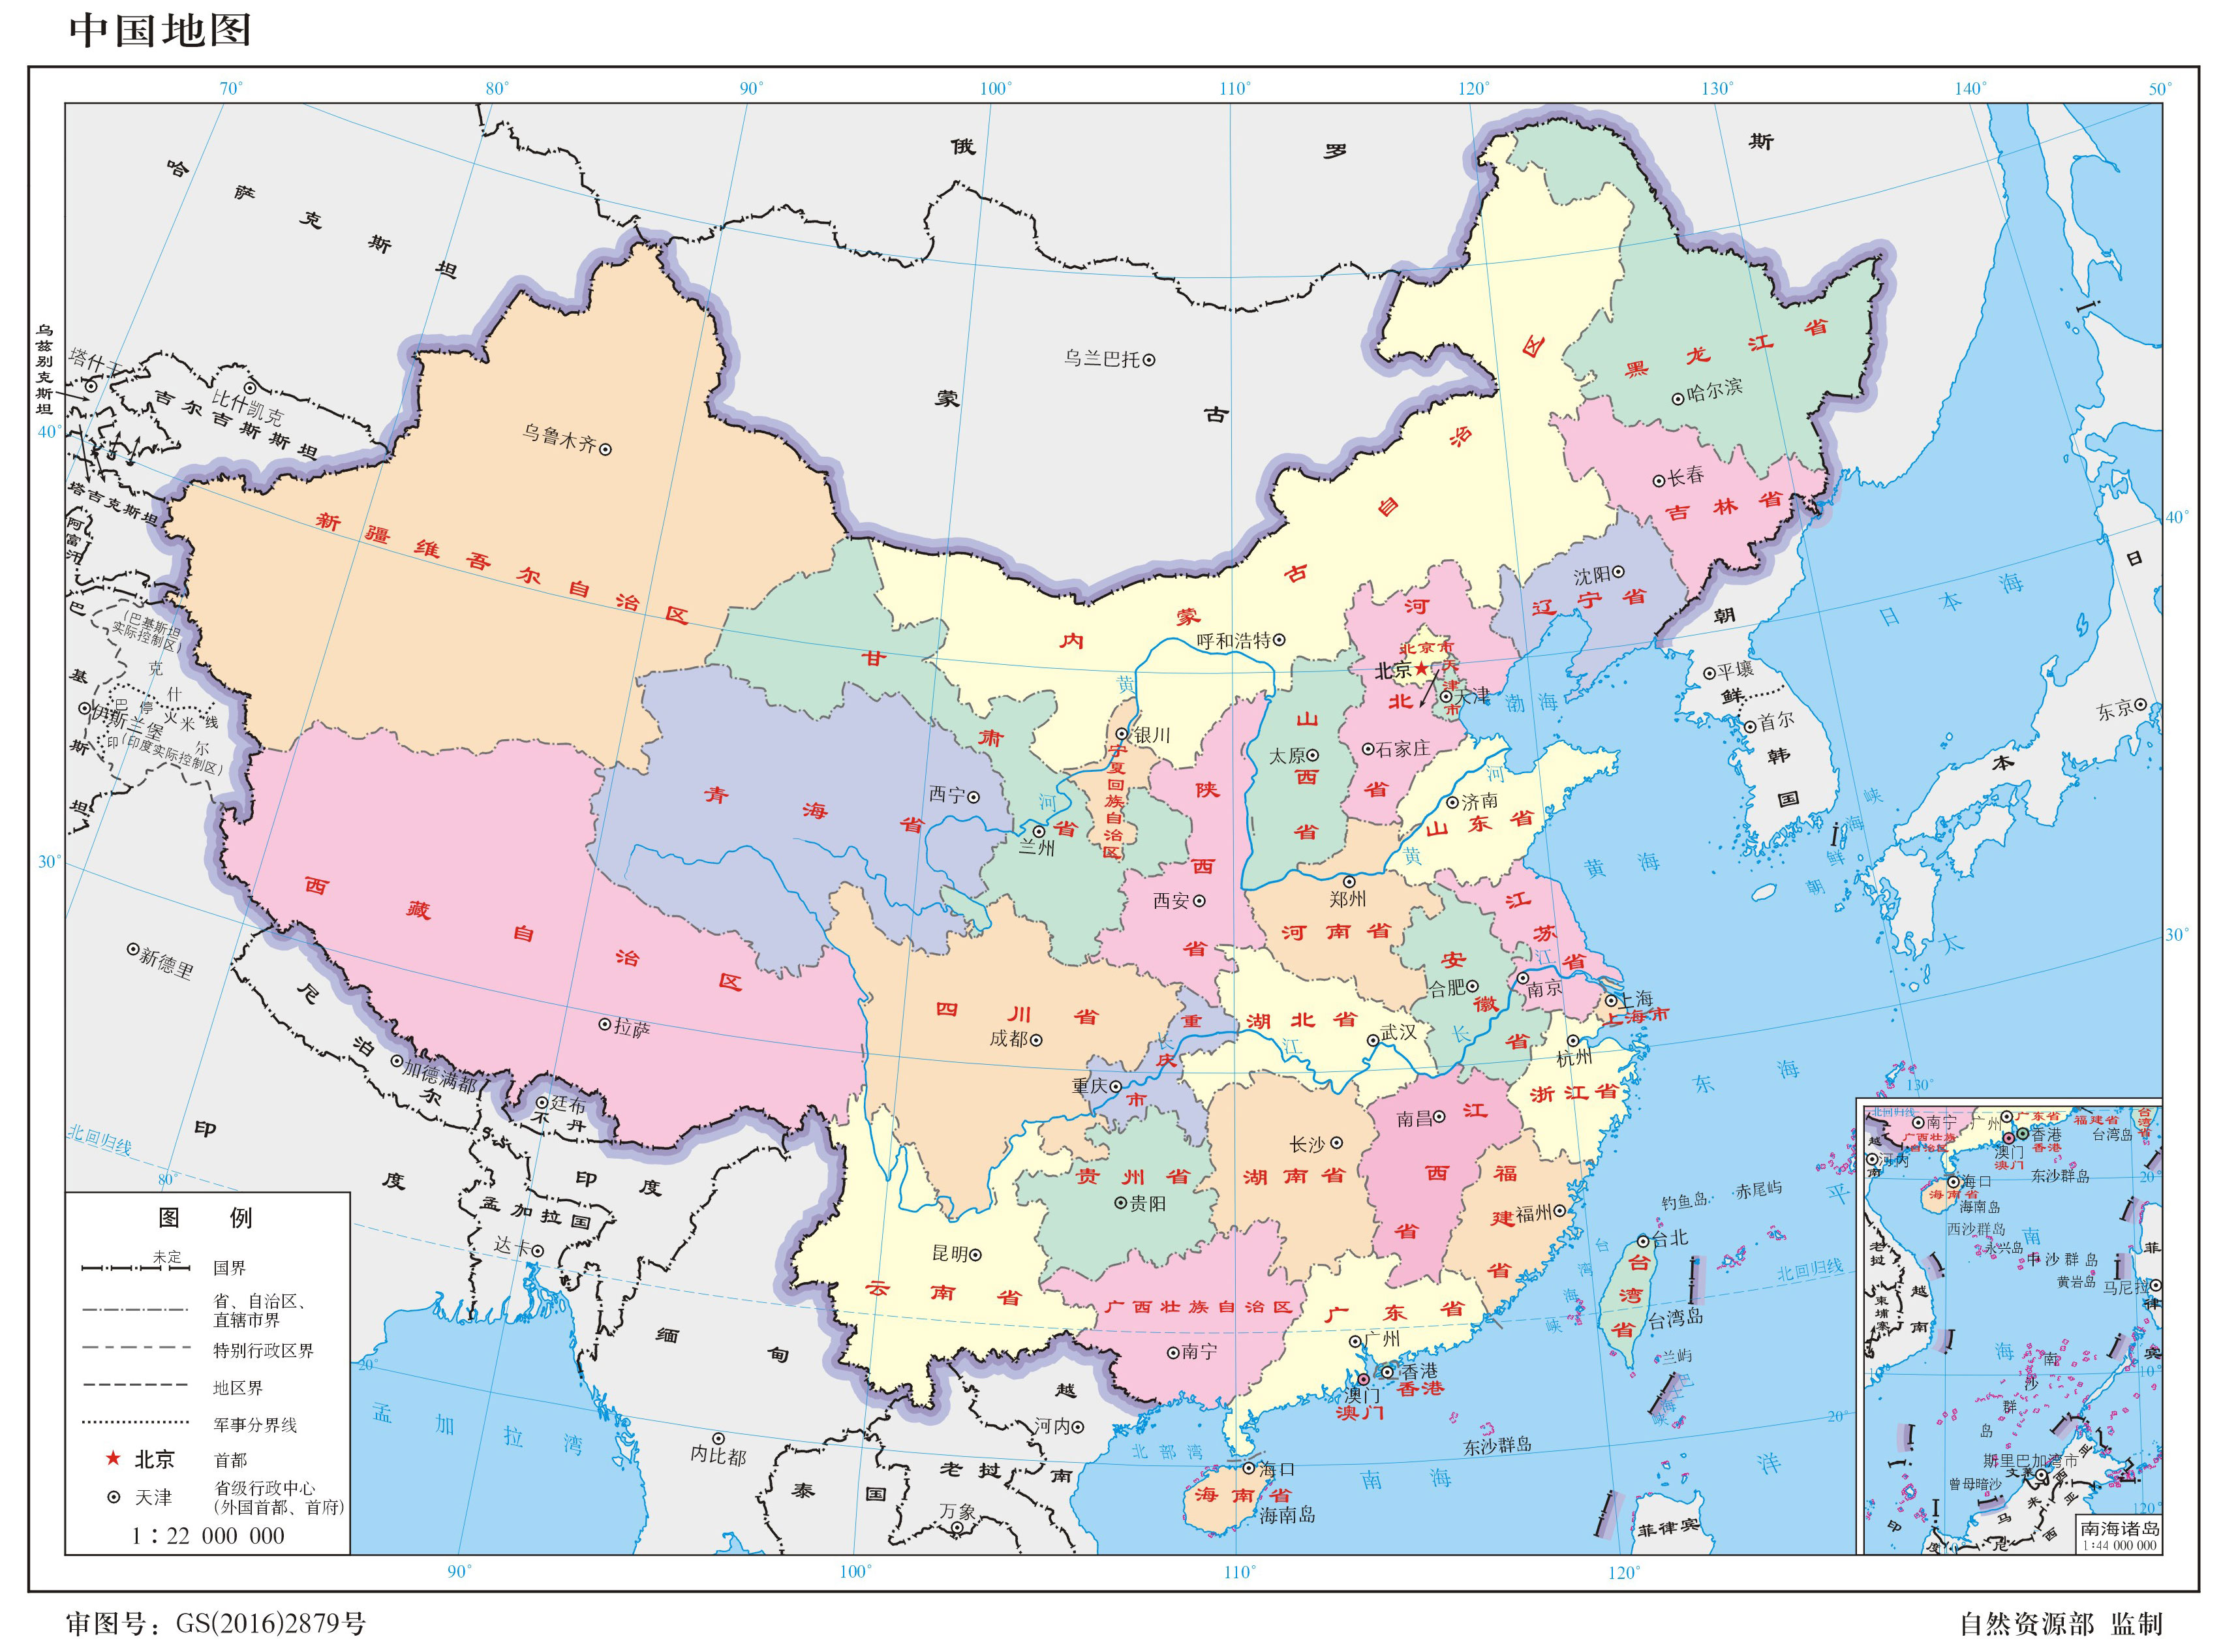 求解广州到上海用时最短的路径,使用中国地图超详细剖析dijkstra算法